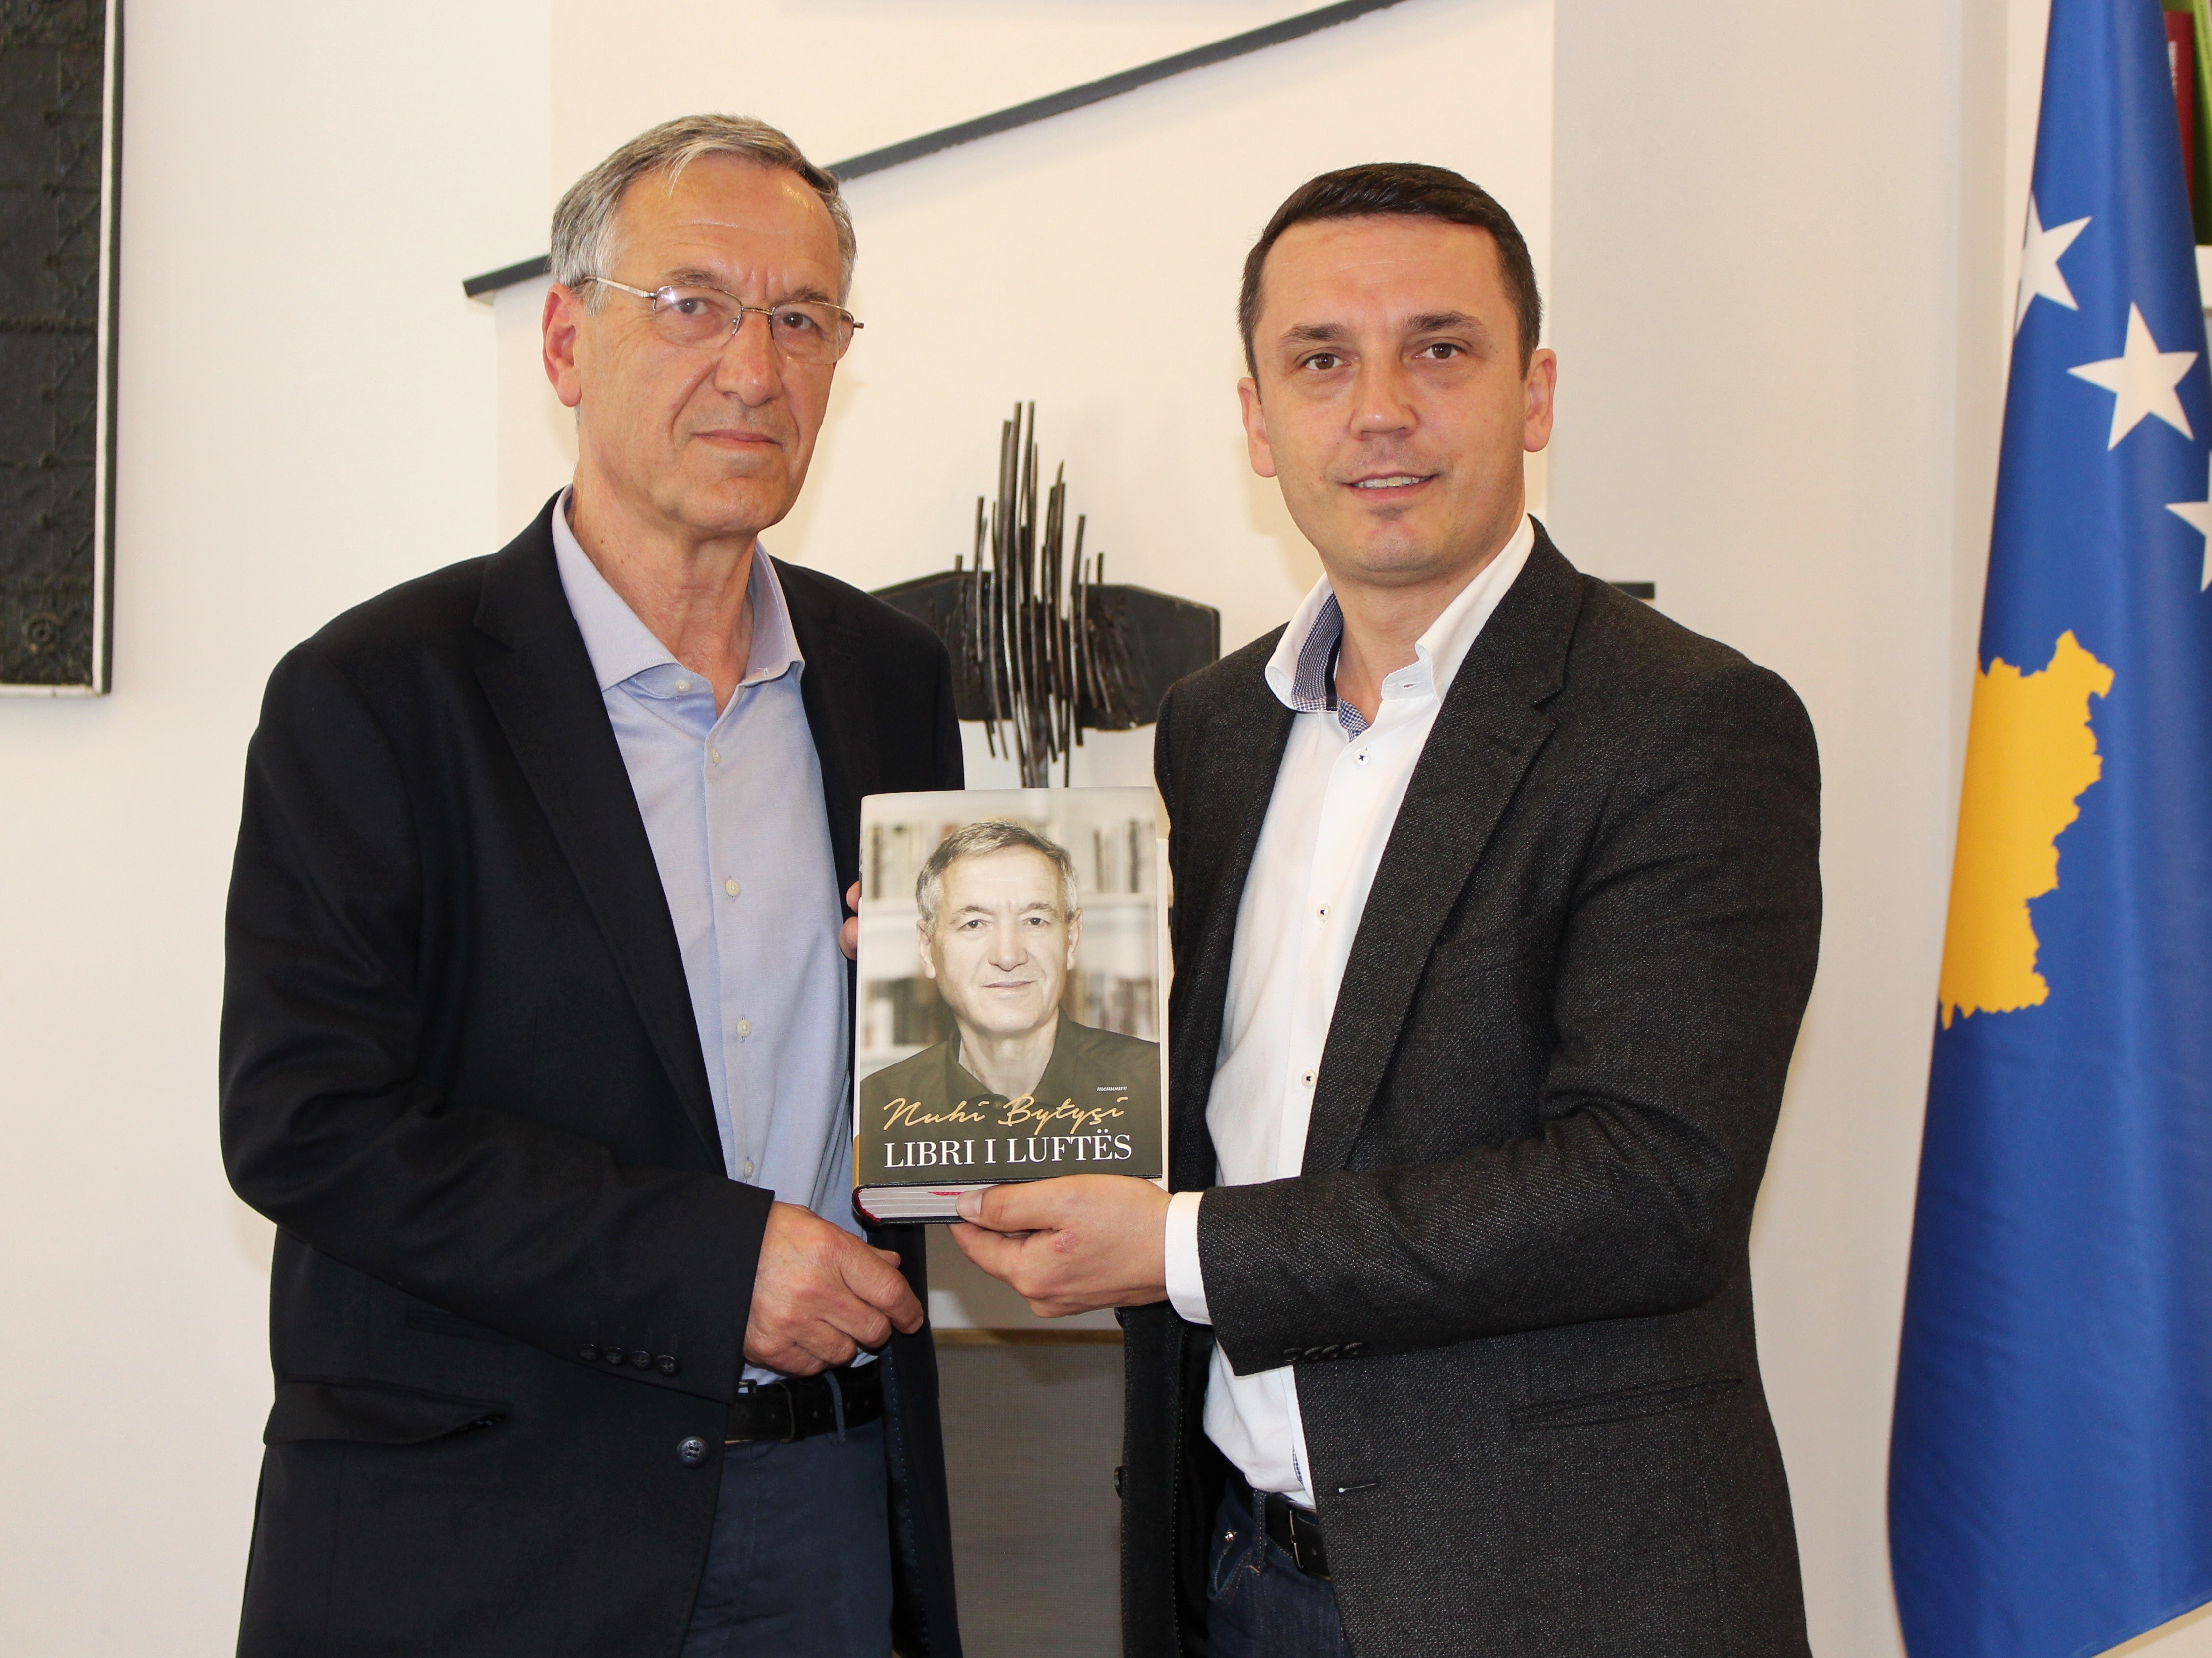 MKRS përgëzon gazetarin dhe publicistin, Nuhi Bytyçi për  “Librin e luftës”